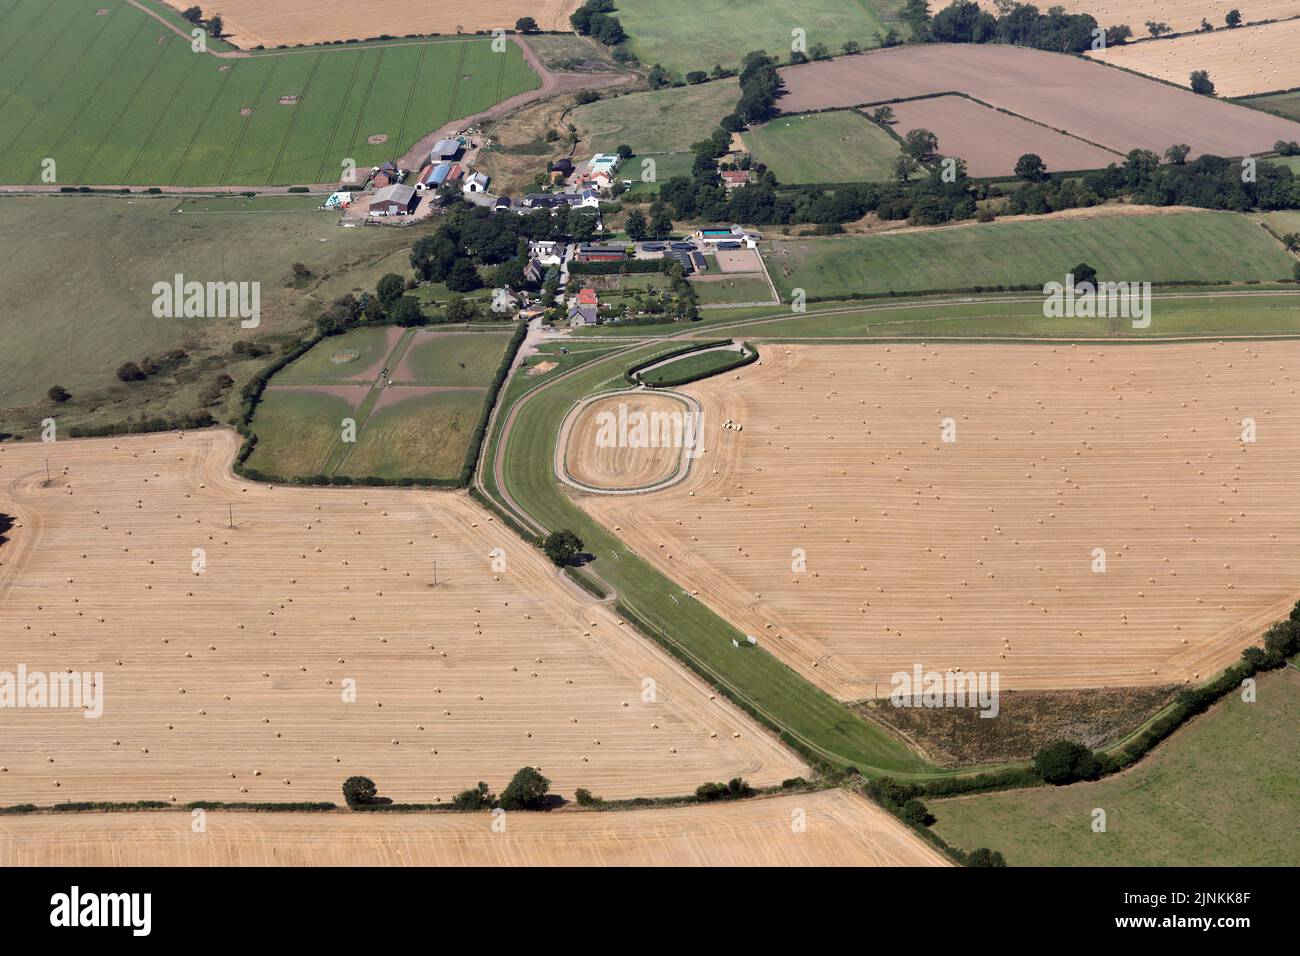 Vista aérea de los establos Michael Dods Racing cerca de Darlington, condado de Durham Foto de stock